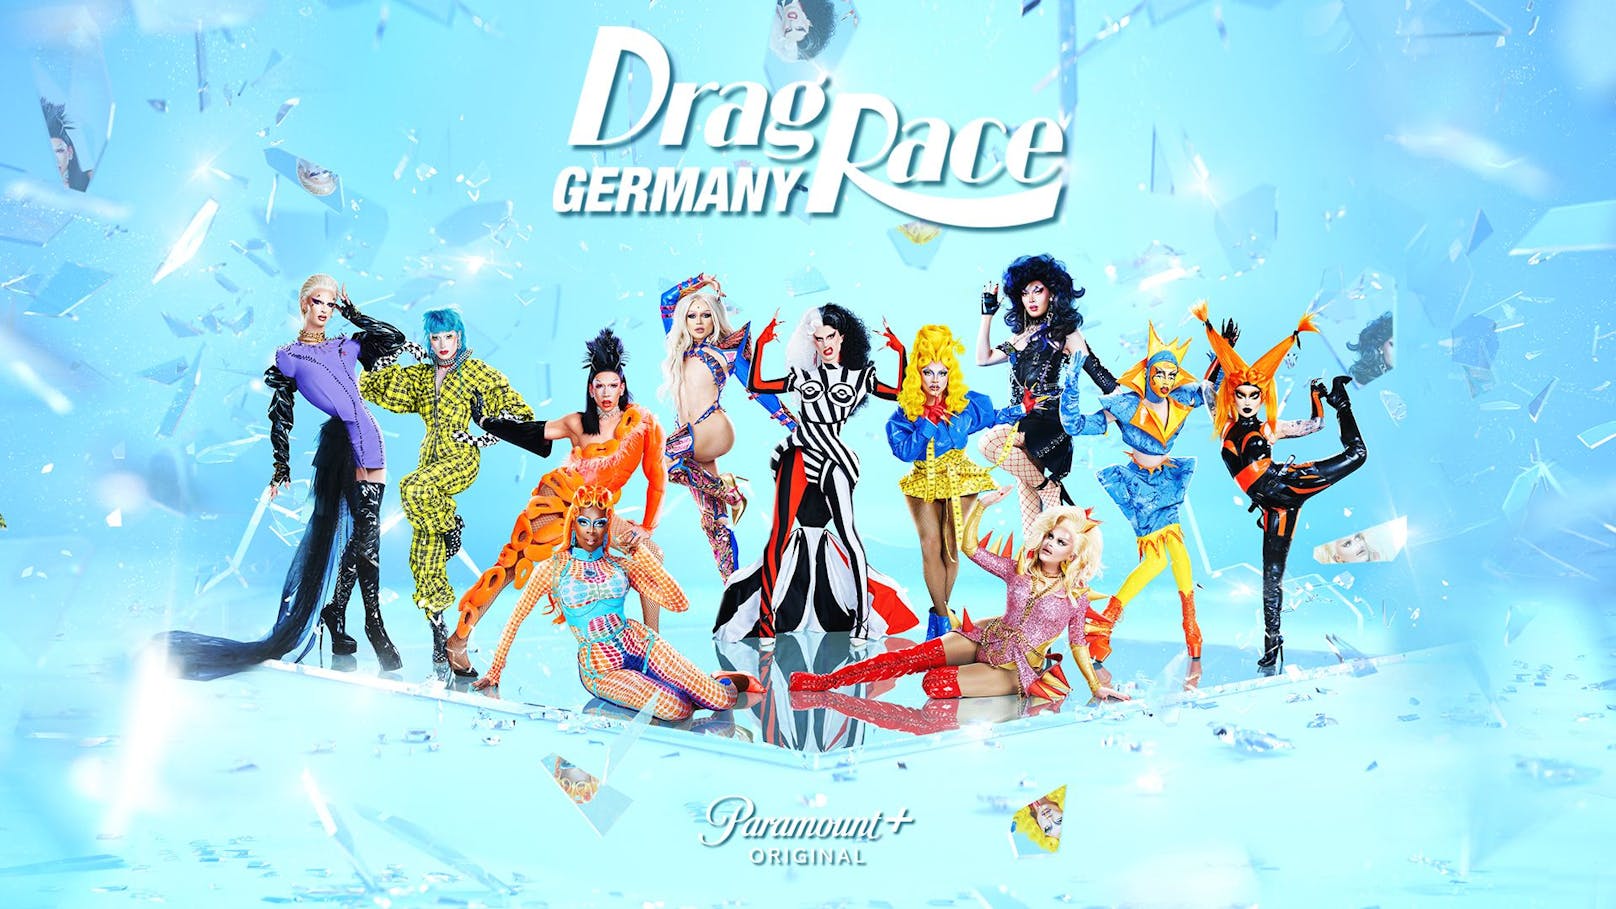 Elf Queens treten bei "Drag Race Germany" an – zwei davon aus Österreich.